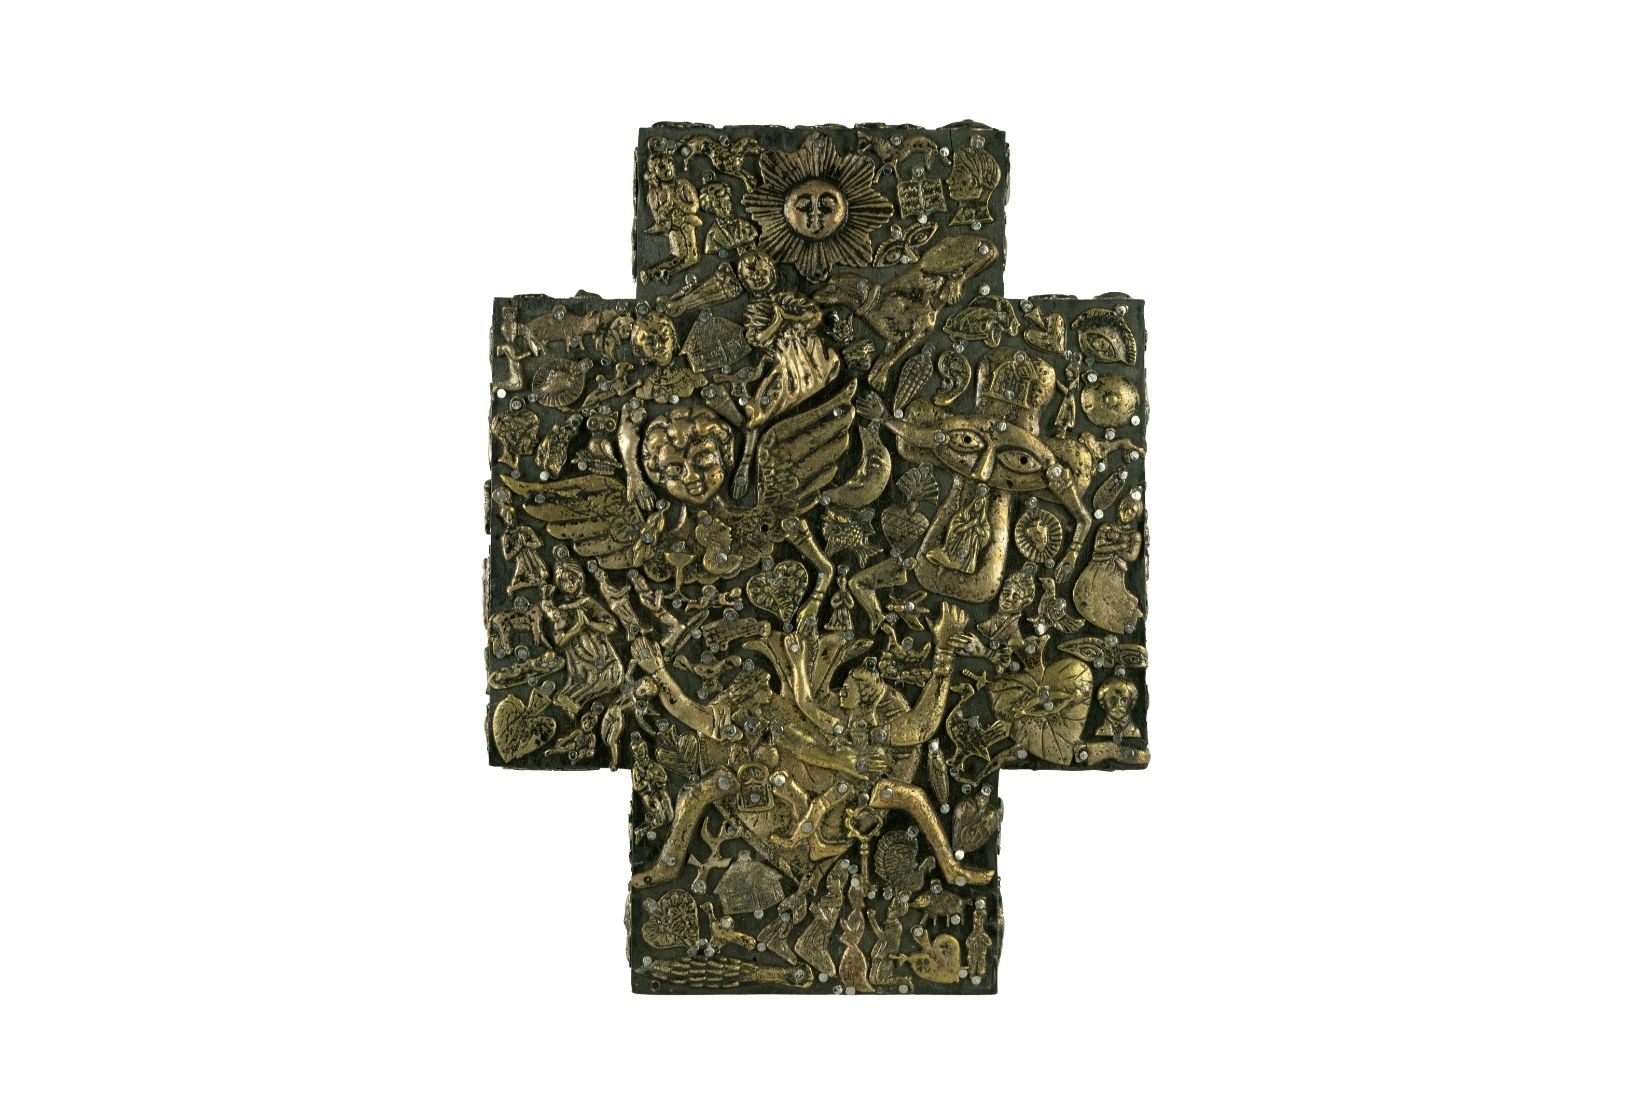 Cruz de madera con milagros de metal. Artesano y procedencia desconocidos. Col. Yoje Tapuach, pieza de AmigosMAP. (Foto: EKV).